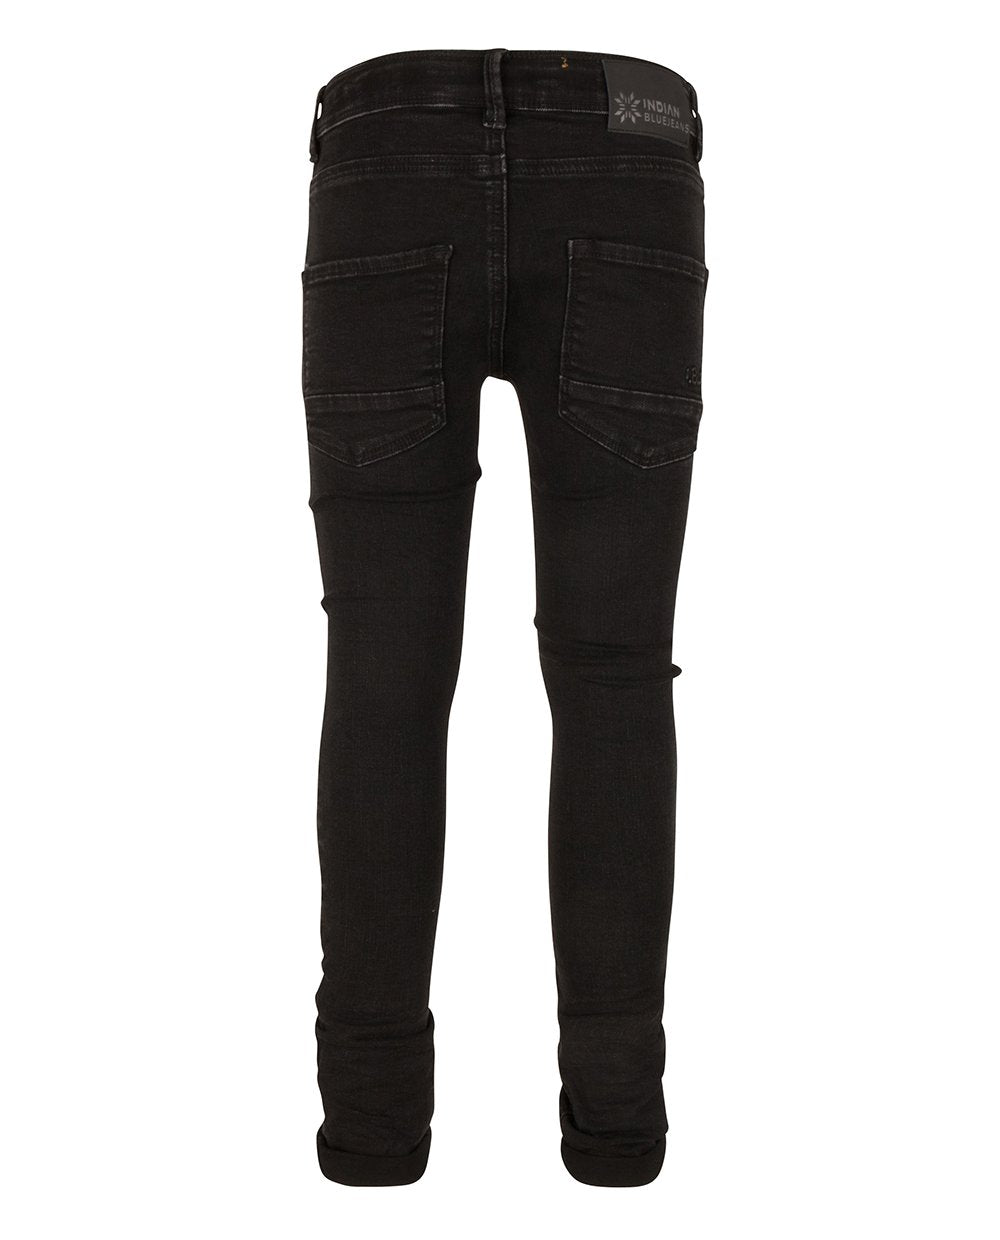 Jongens BLACK ANDY FLEX SKINNY FIT van Indian Blue Jeans in de kleur Used Black Denim in maat 176.